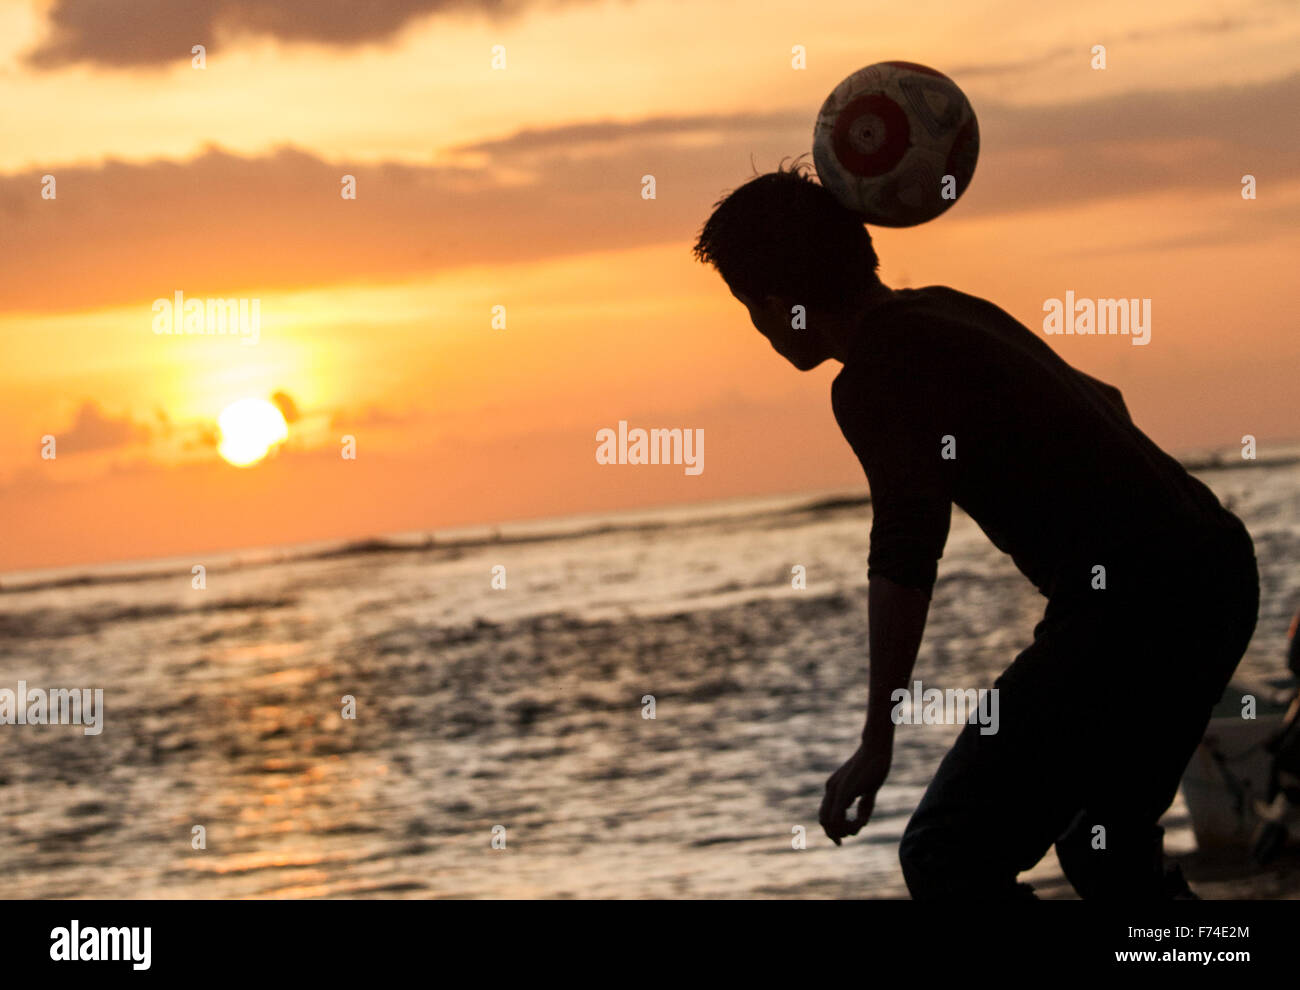 Jugador de fútbol encabeza una pelota en la playa al anochecer, Zihuatanejo, Guerrero, México. Foto de stock